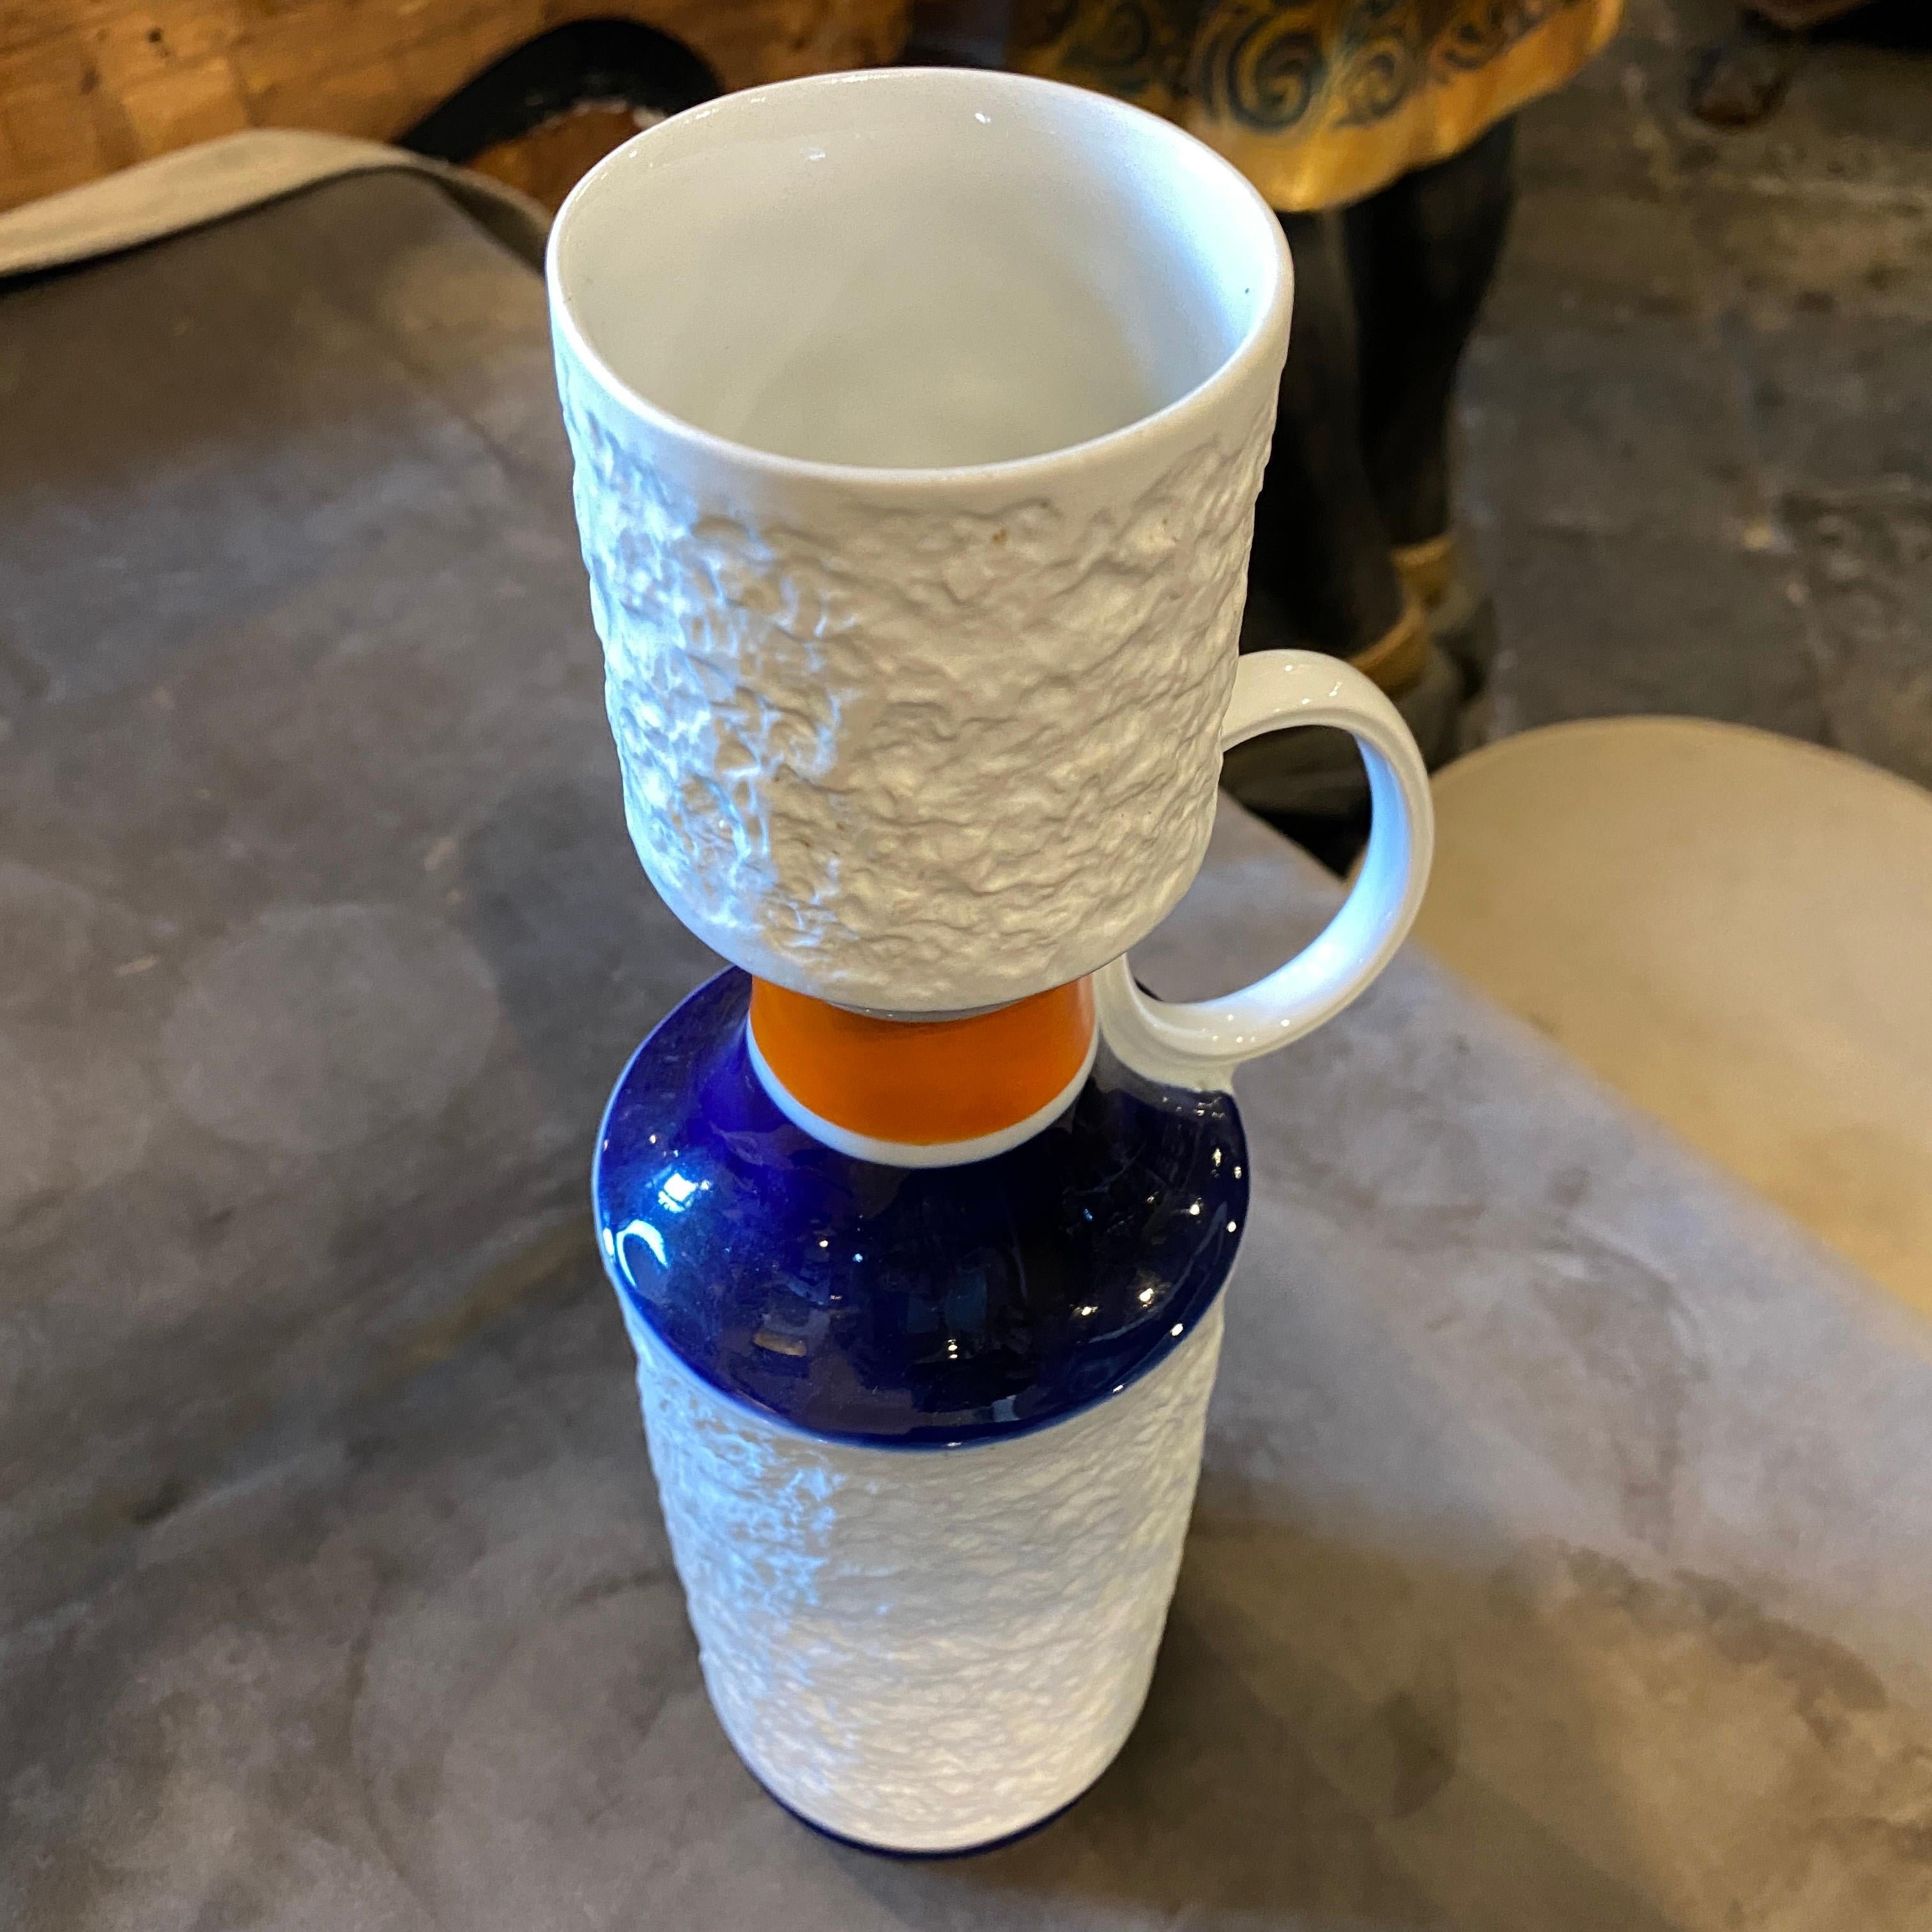 1970s Modernist White Orange and Blue Porcelain German Bottle Vase by K.P.M. For Sale 2